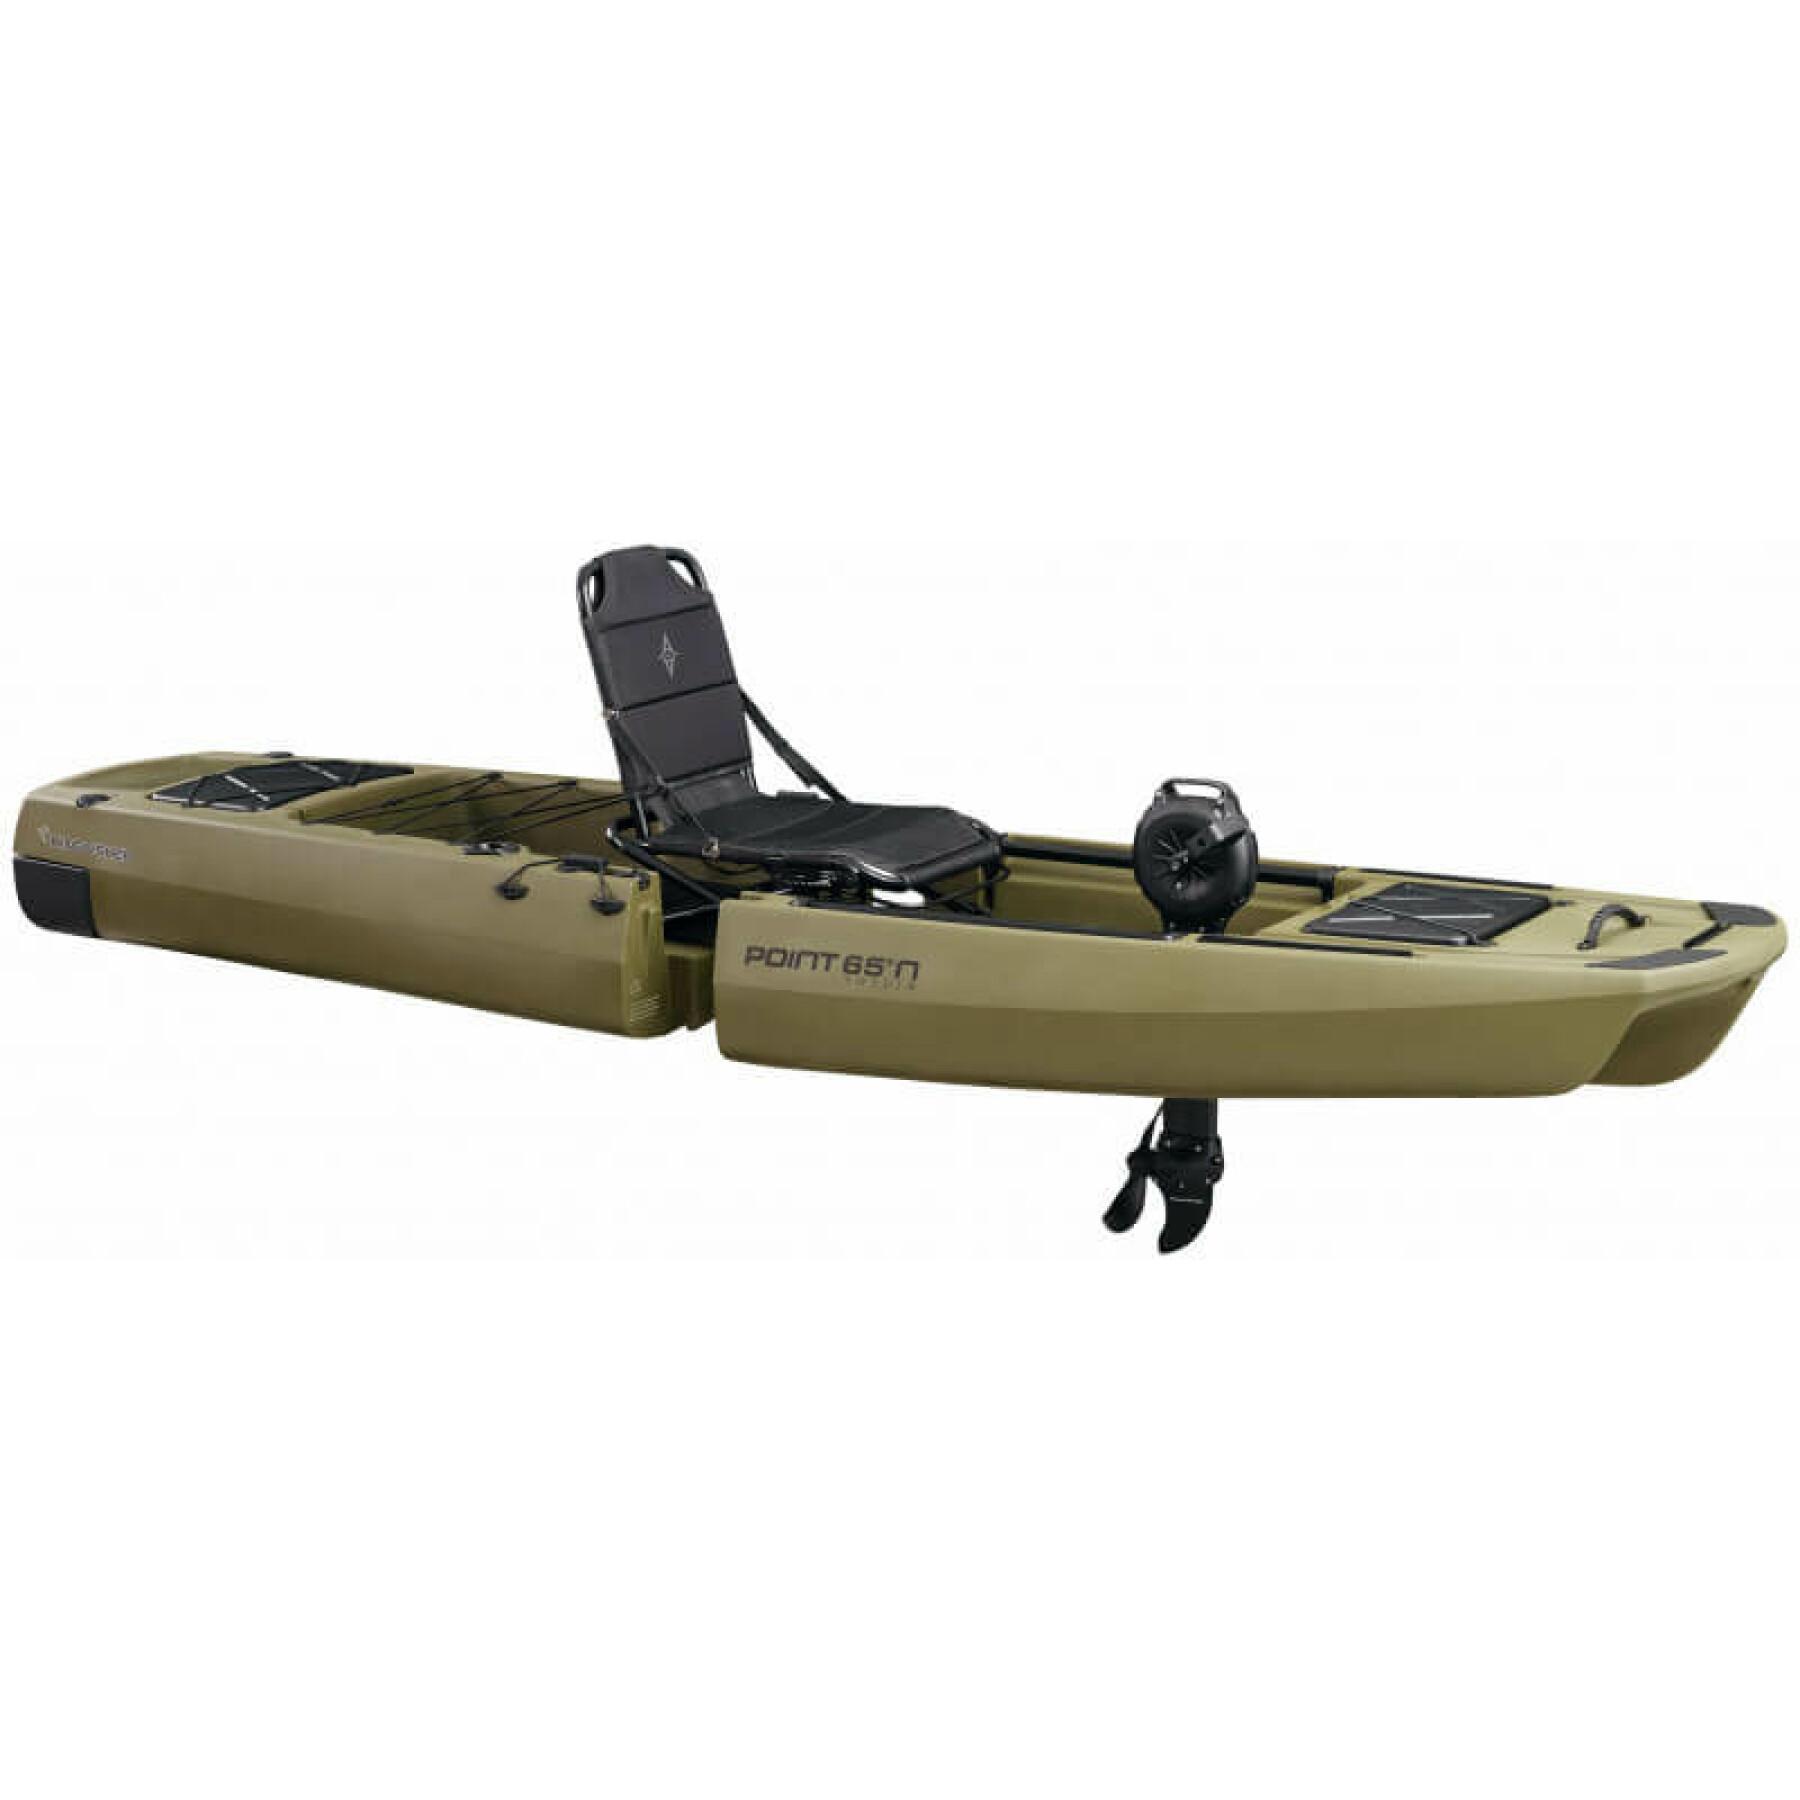 Moteur à pédales pour kayak kingfisher Point 65°N impulse drive